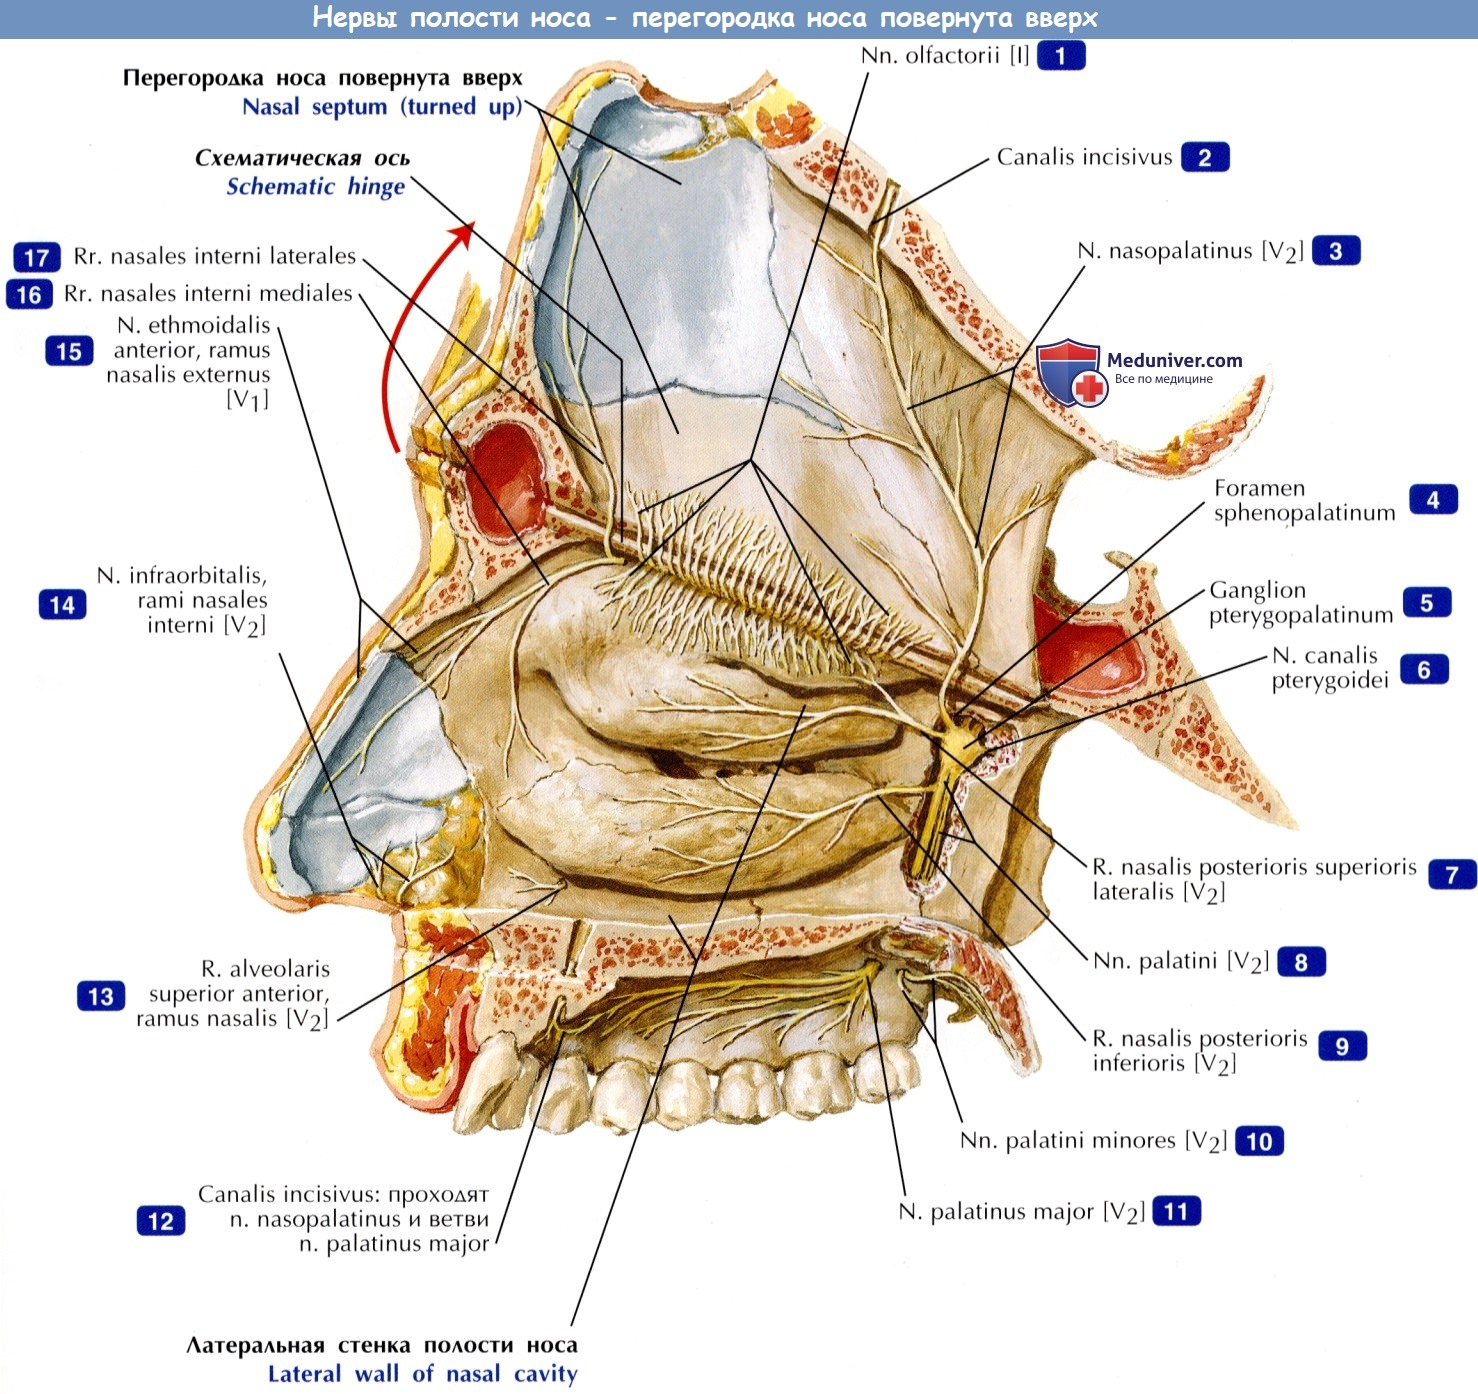 Нервы полости носа - по атласу анатомии